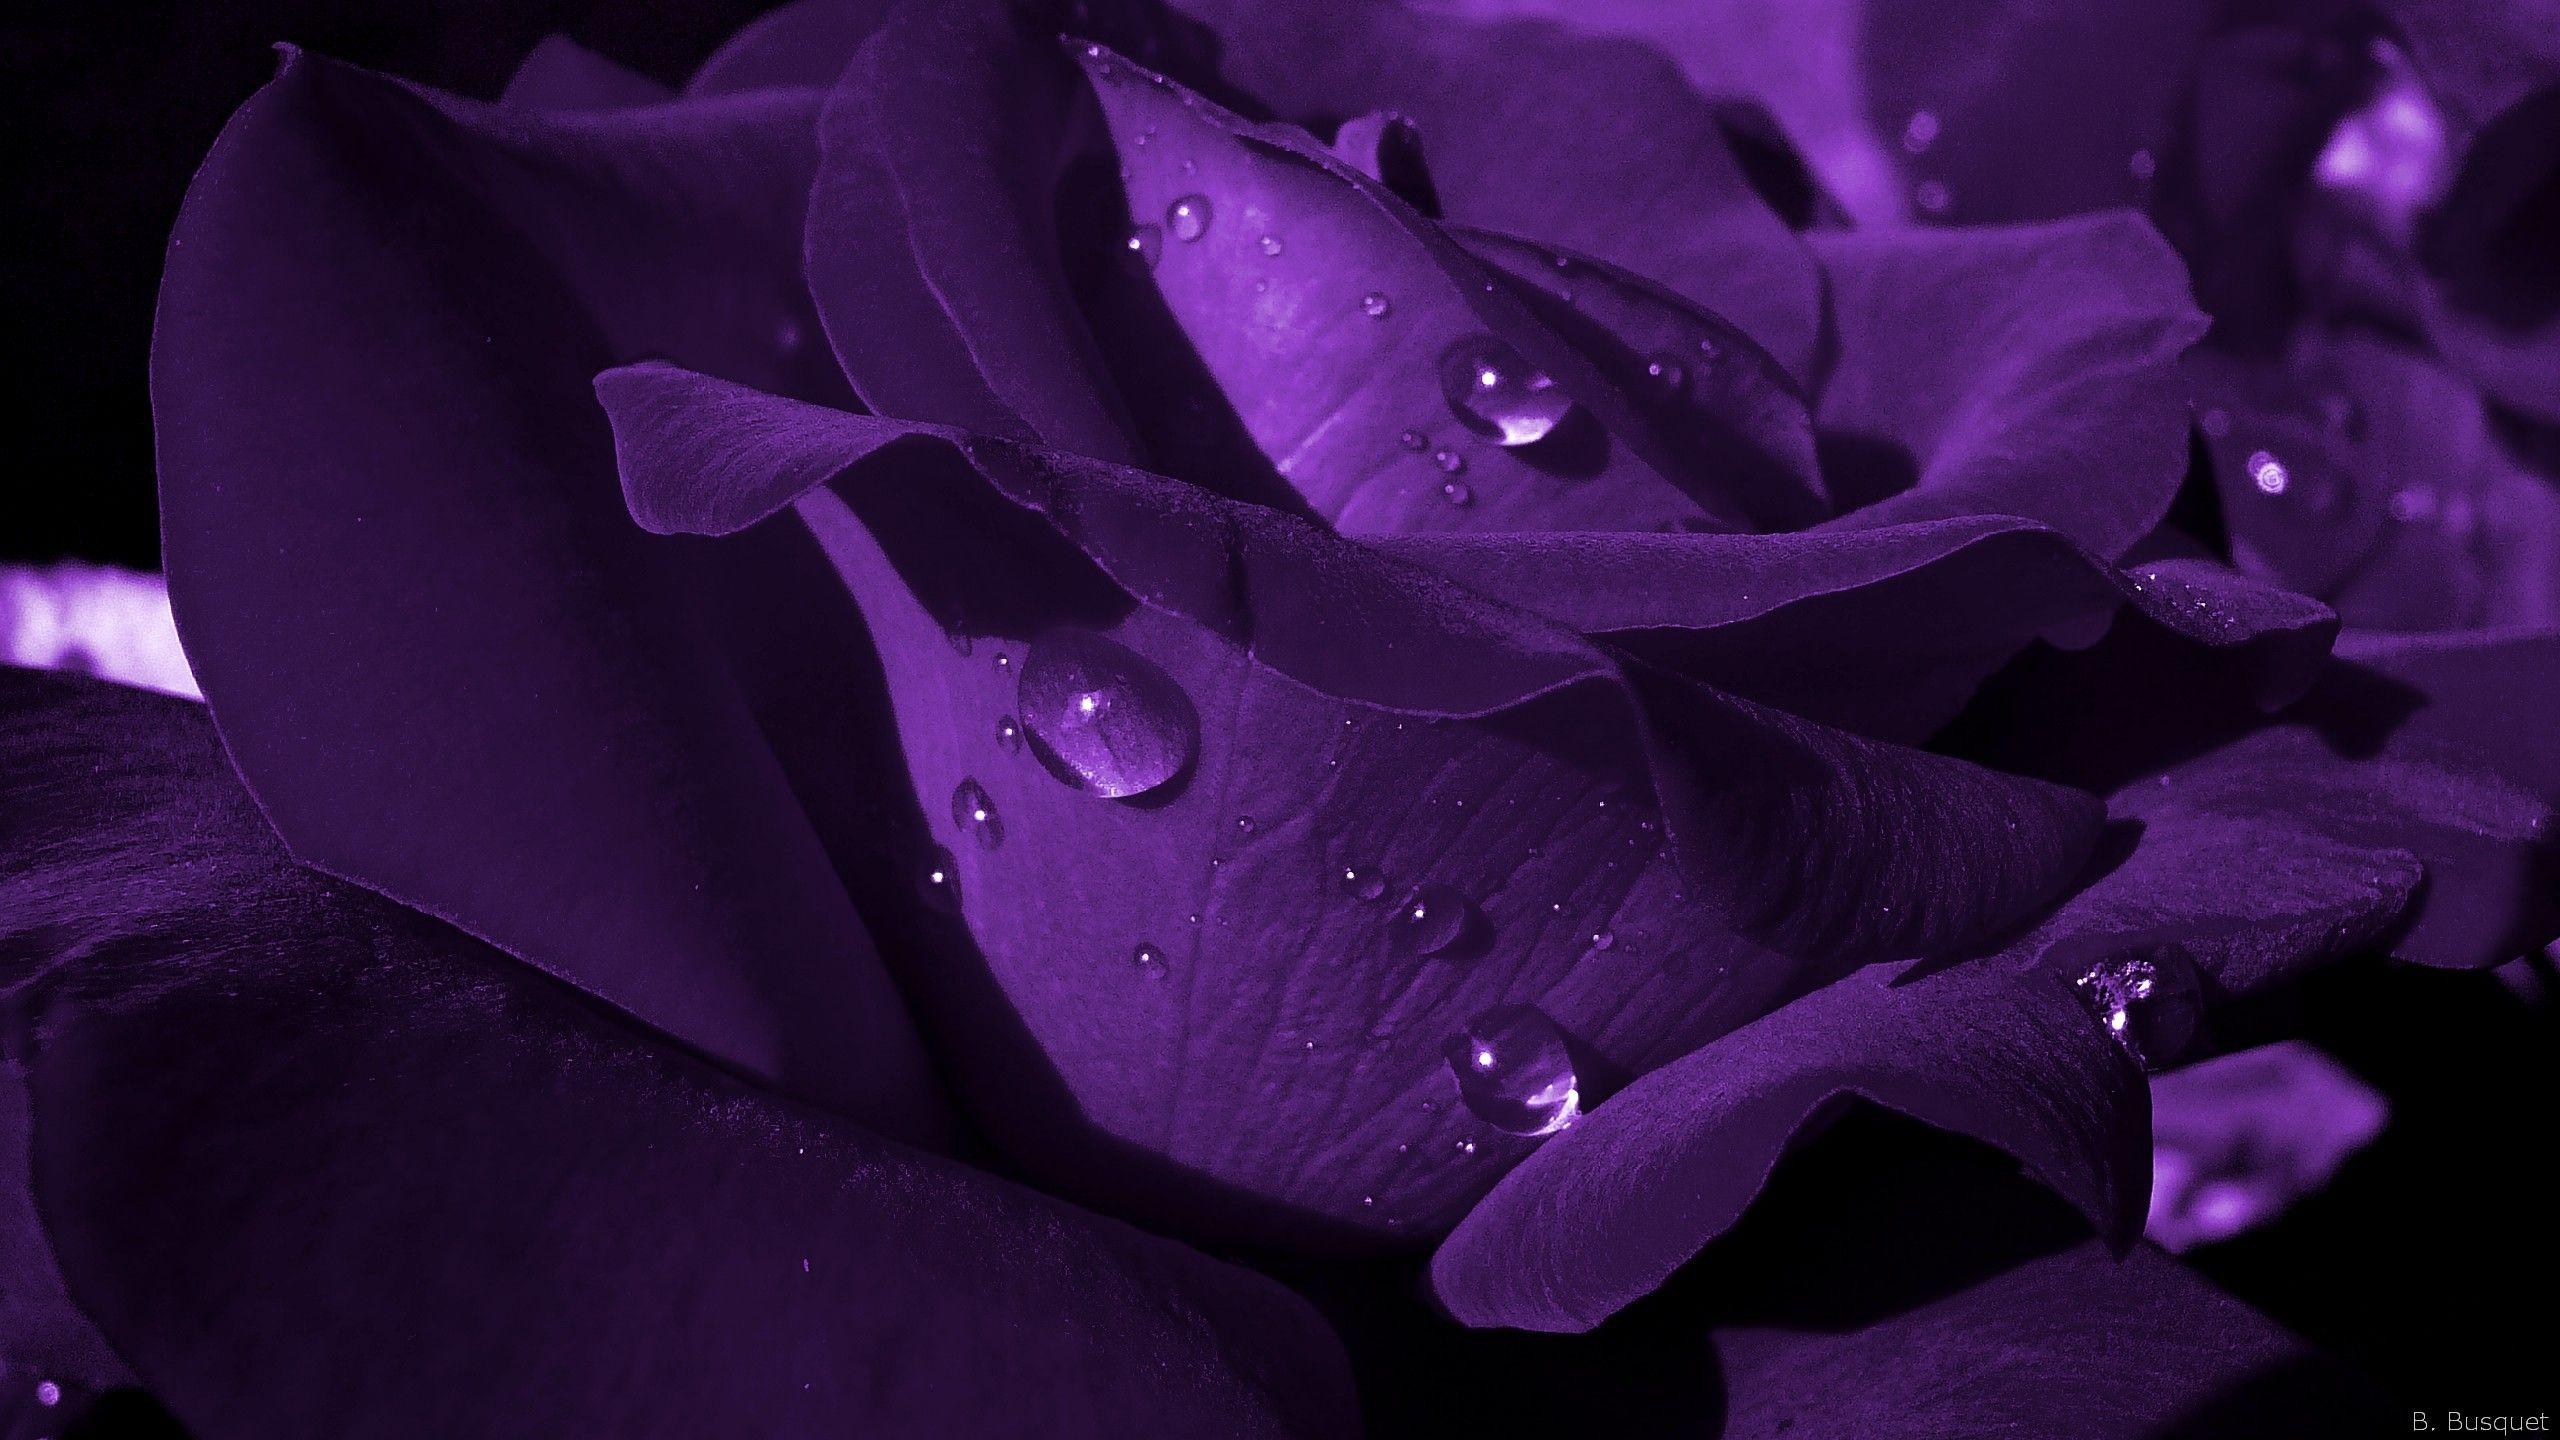 HD Wallpaper 1080p Purple Rose 9. Flowers Wallpaper